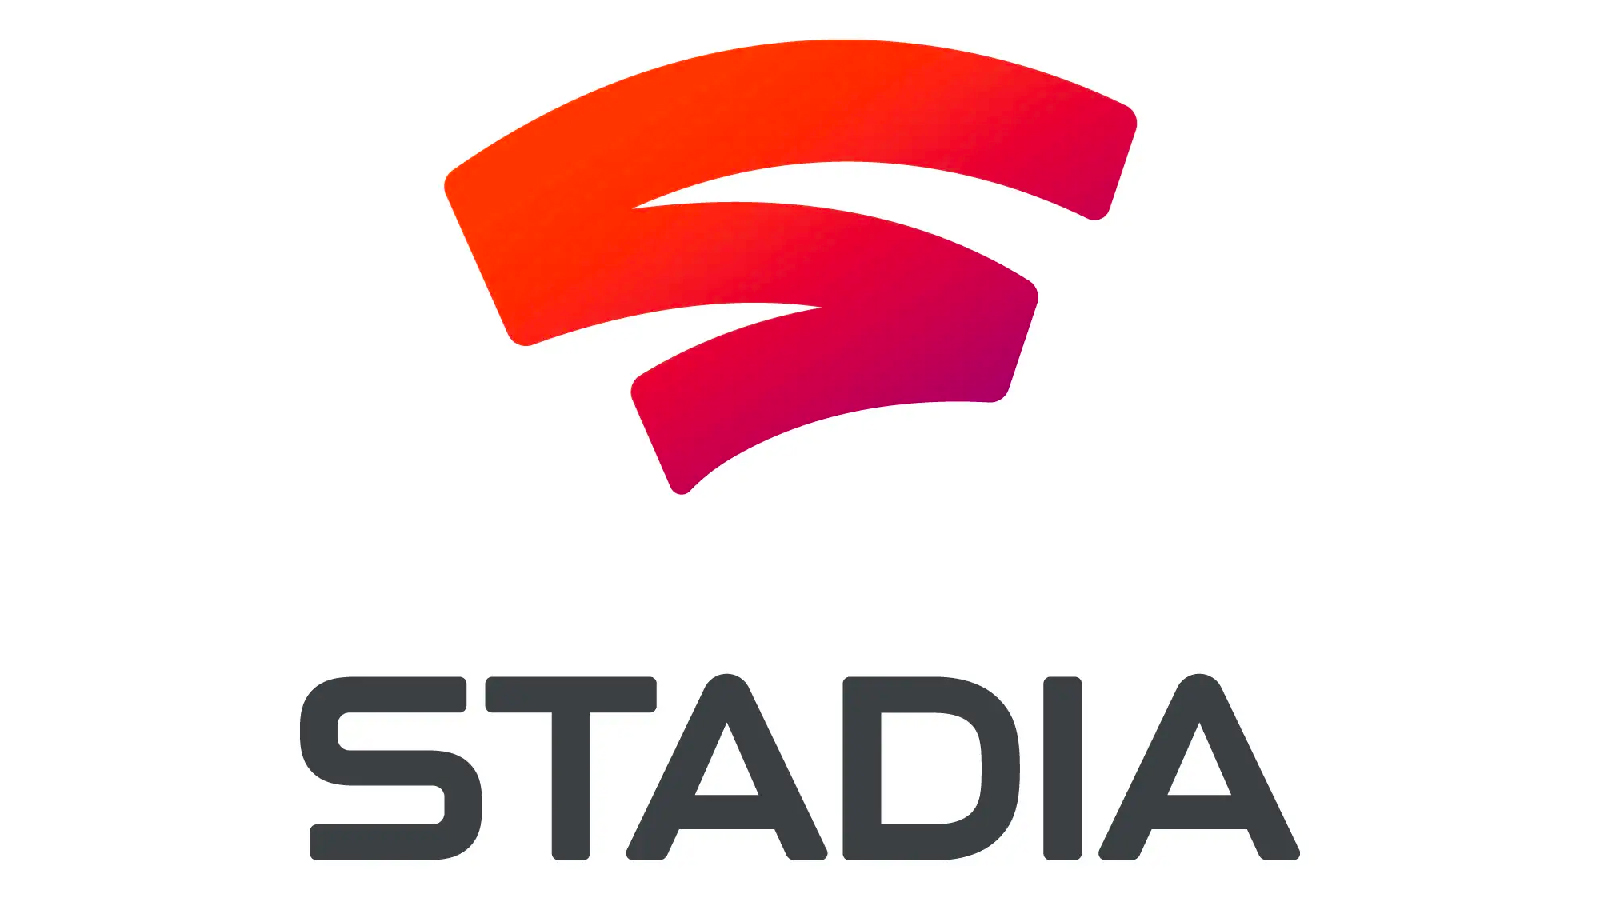 Stadia : face à l'échec du service, Google annonce la fermeture de ses studios internes